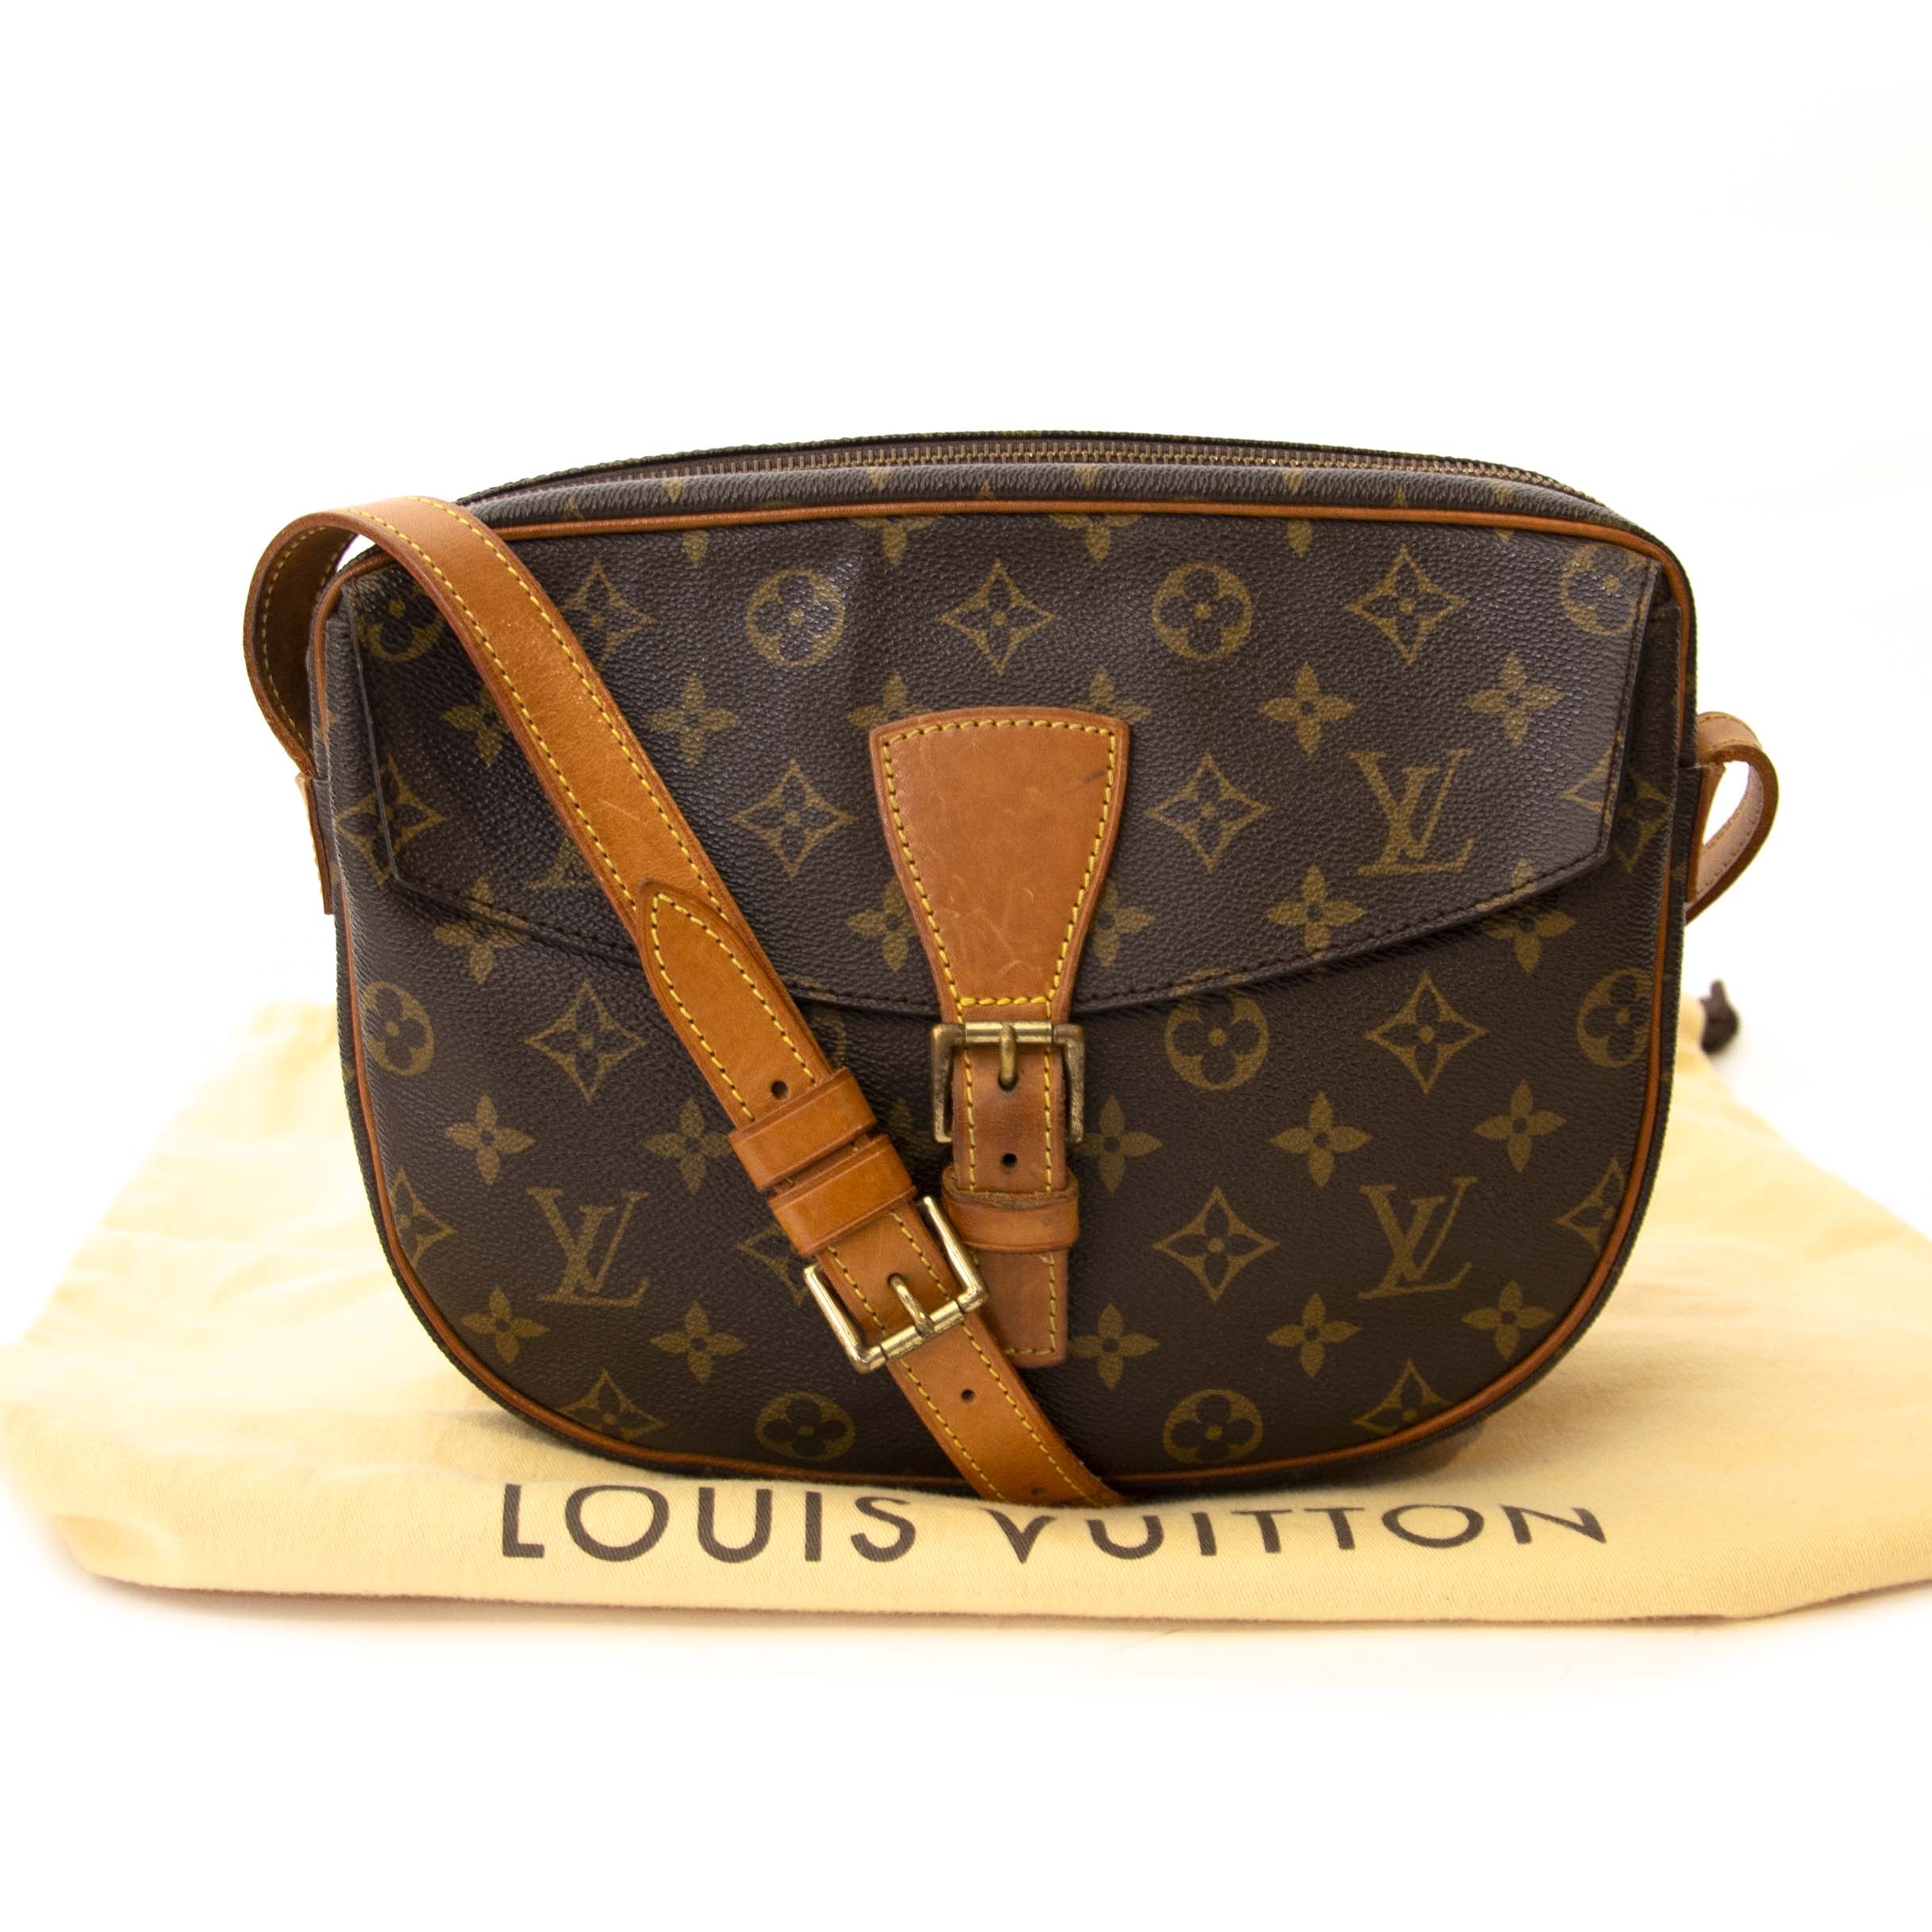 Sold at Auction: Louis Vuitton, LOUIS VUITTON, SCHULTERTASCHE JEUNE FILLE